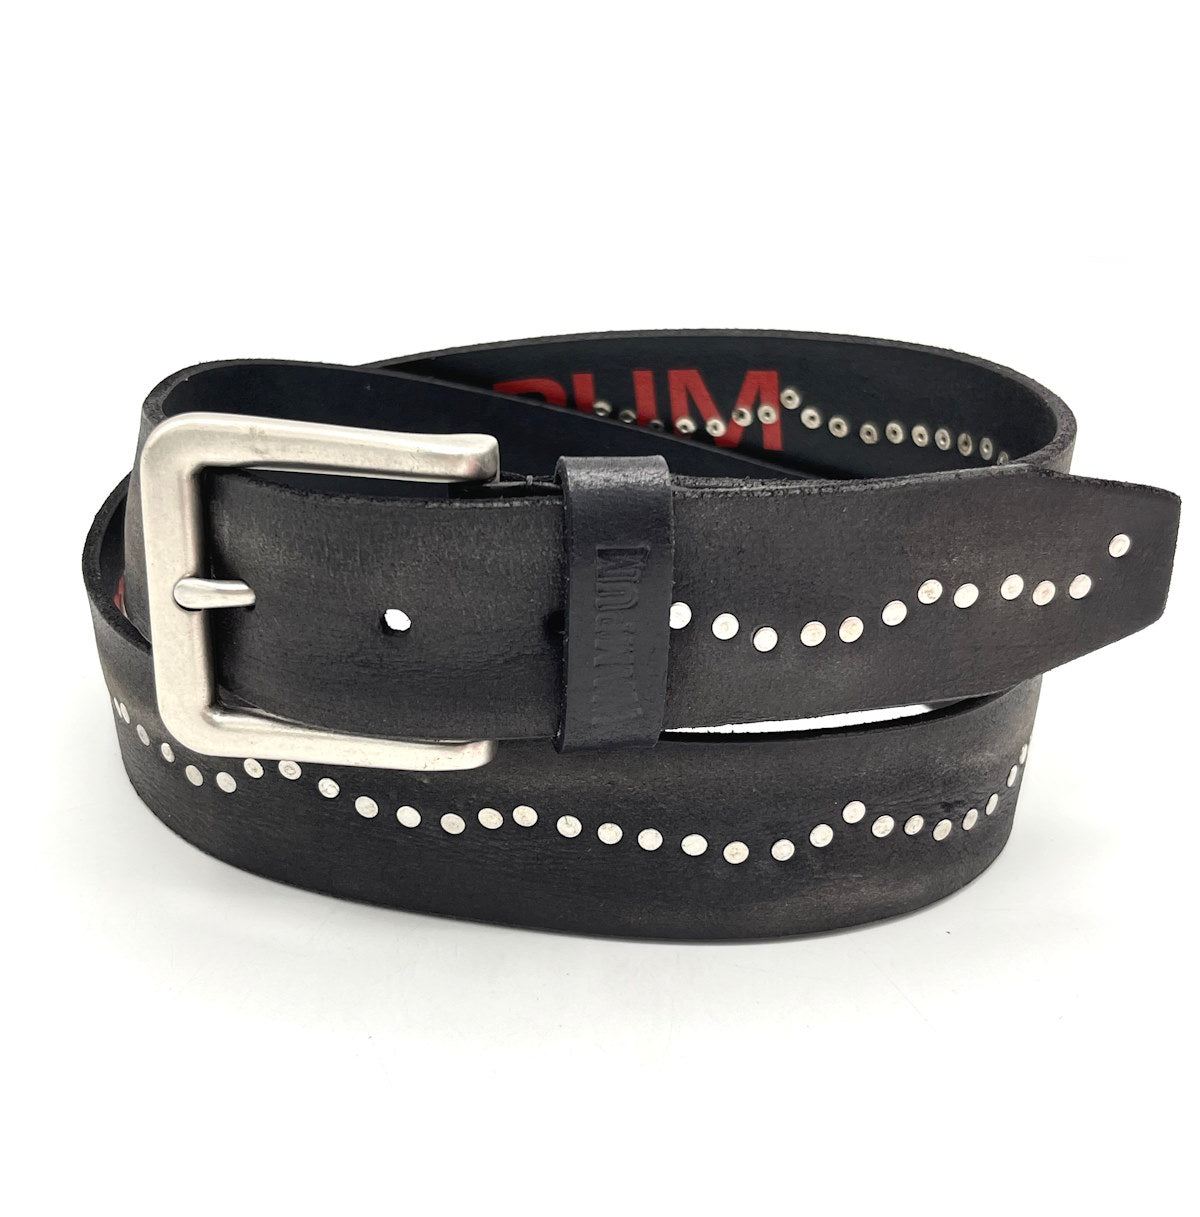 Genuine leather belt, Brand Wampum, art. DK484/40